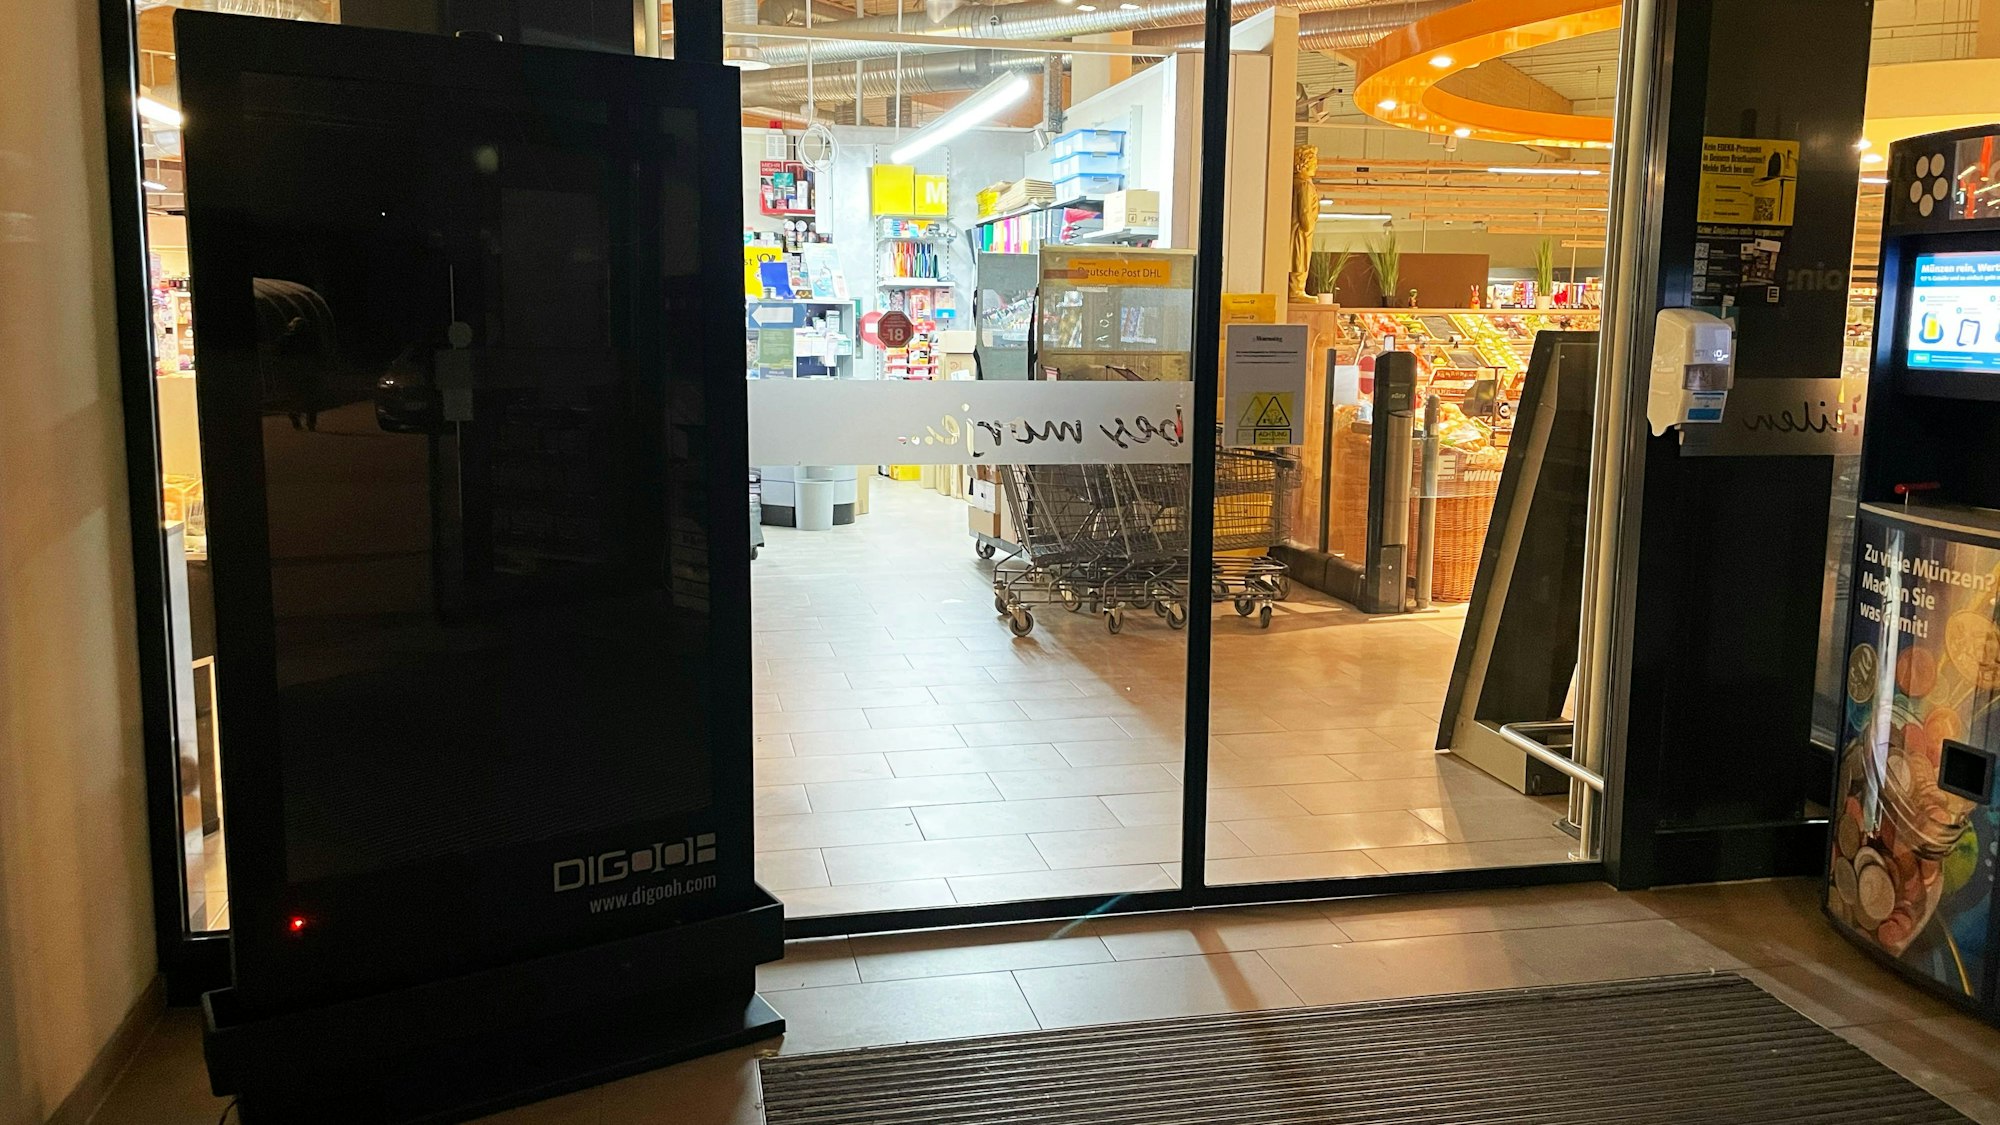 Ein Bildschirm im Eingangsbereich eines Supermarkts ist absichtlich nicht eingeschaltet.